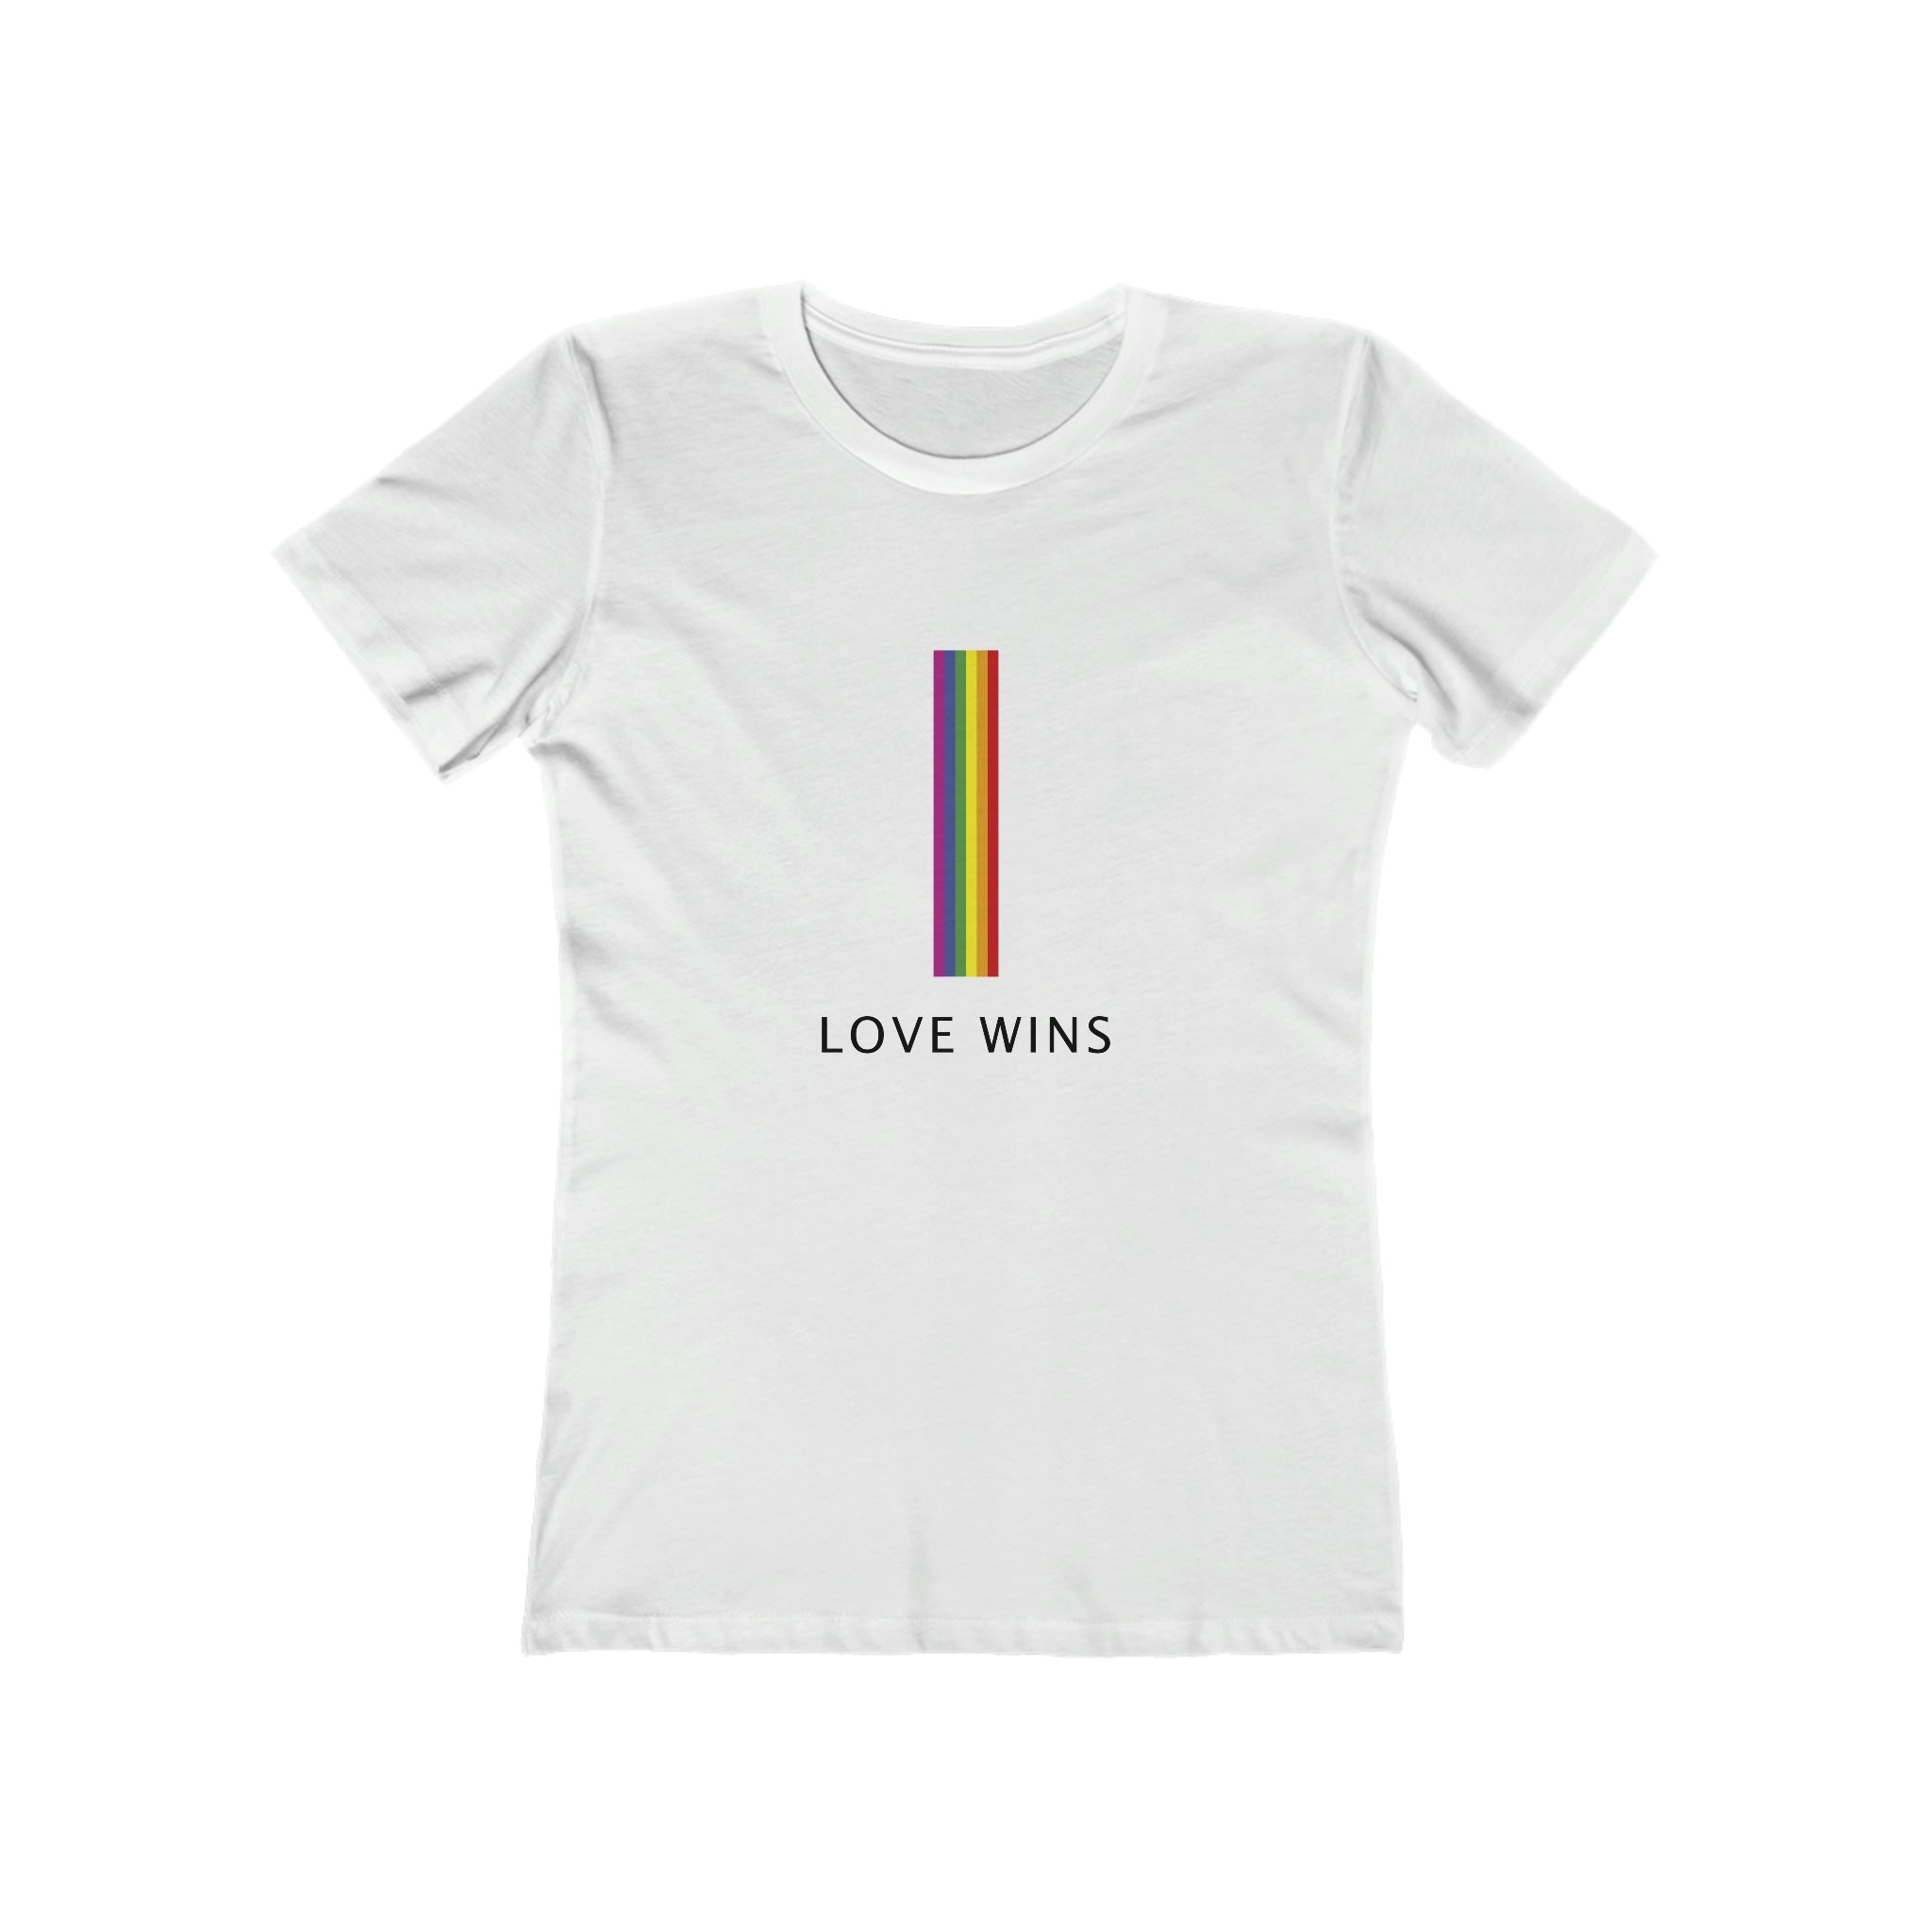 Love Wins : Women's 100% Cotton T-Shirt